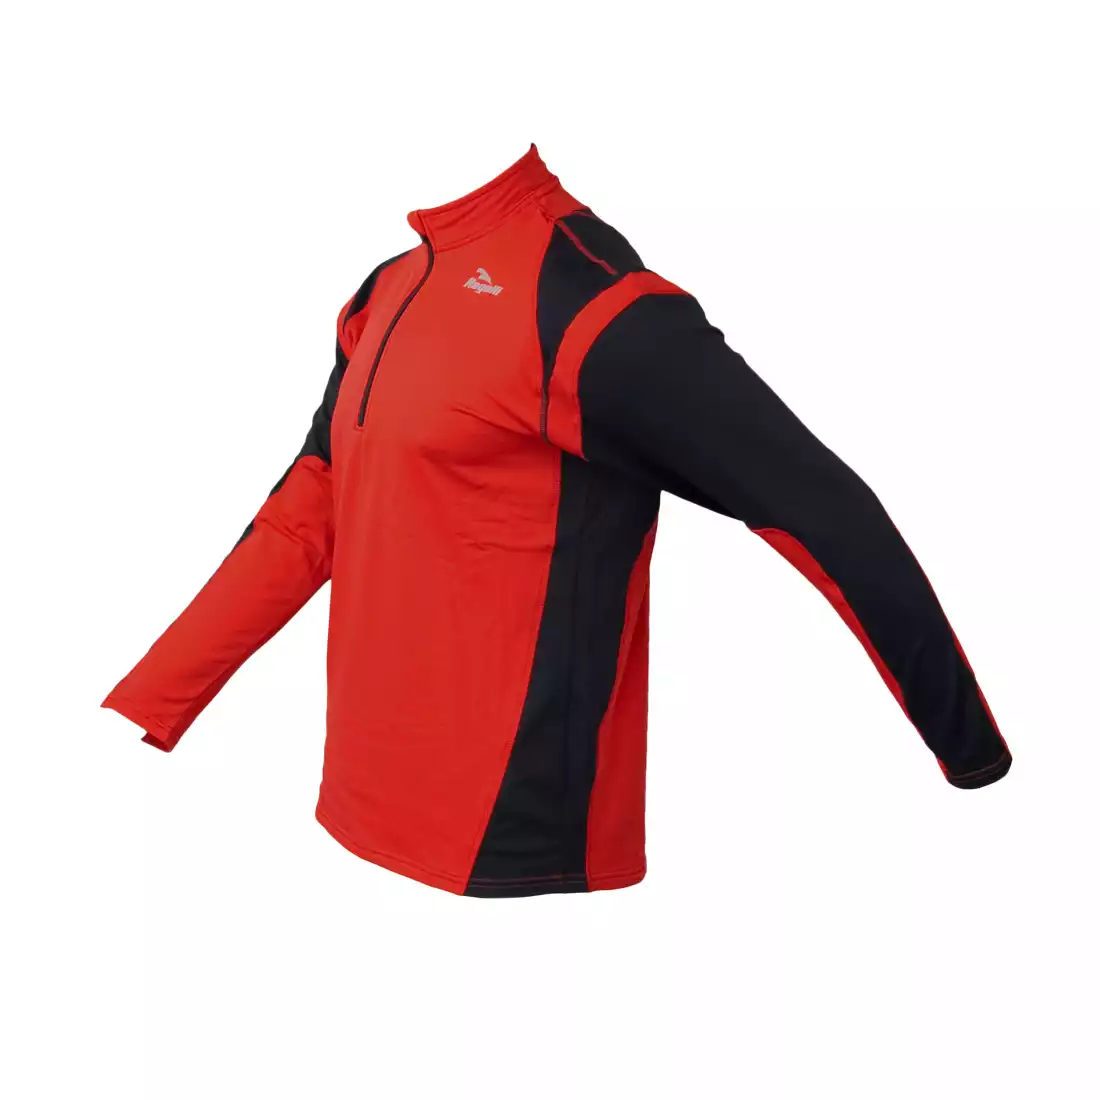 ROGELLI RUN - DILLON - lekko ocieplana męska bluza biegowa, kolor: Czerwony